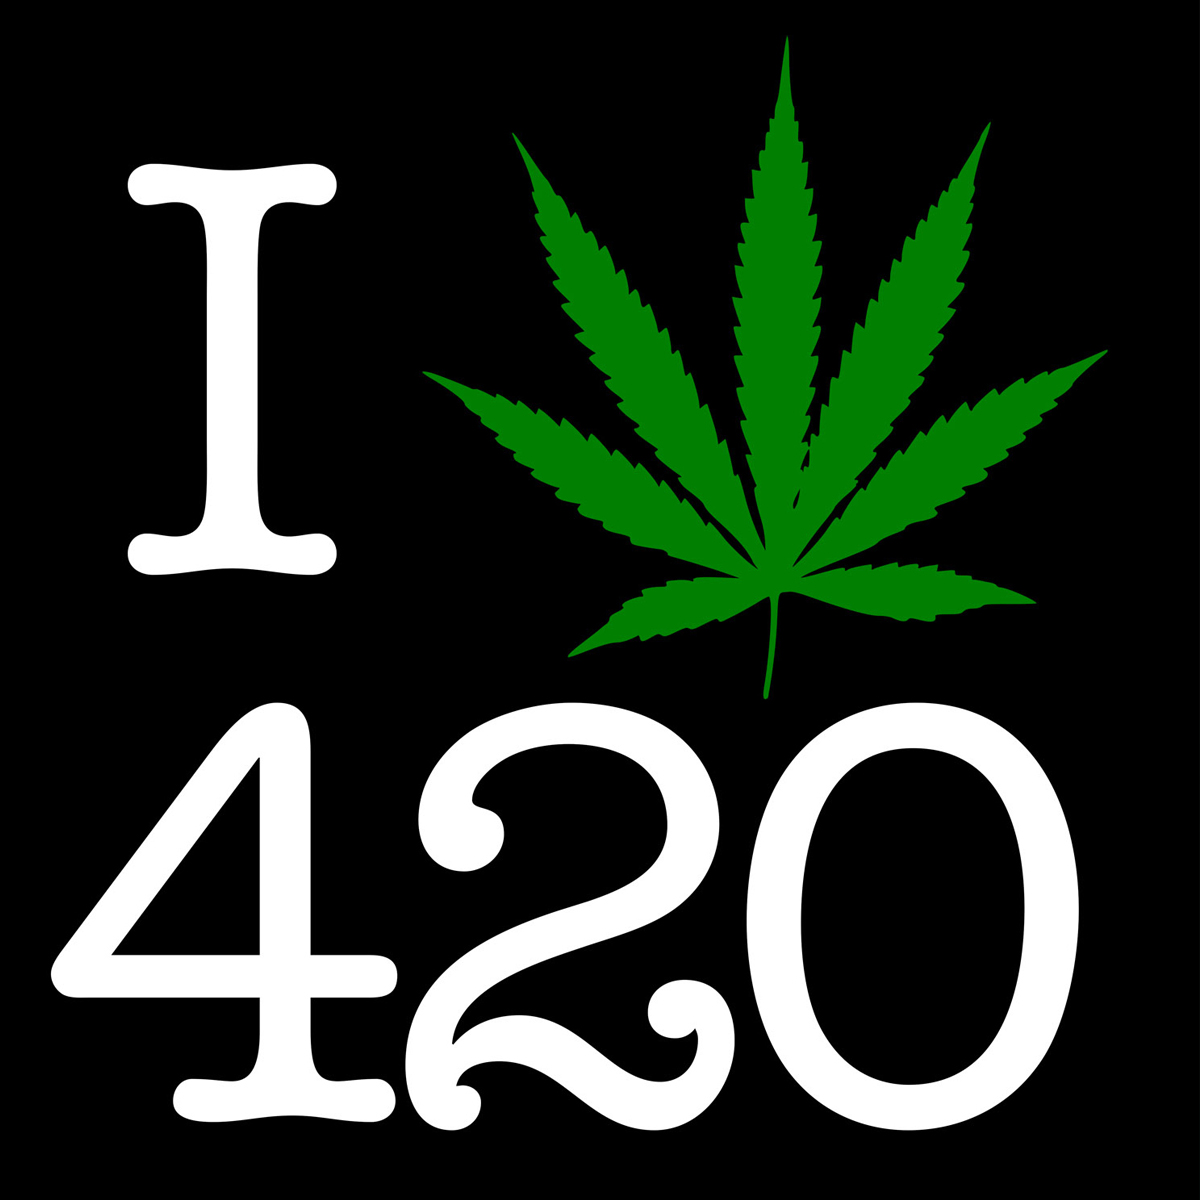 Download 420 Logos